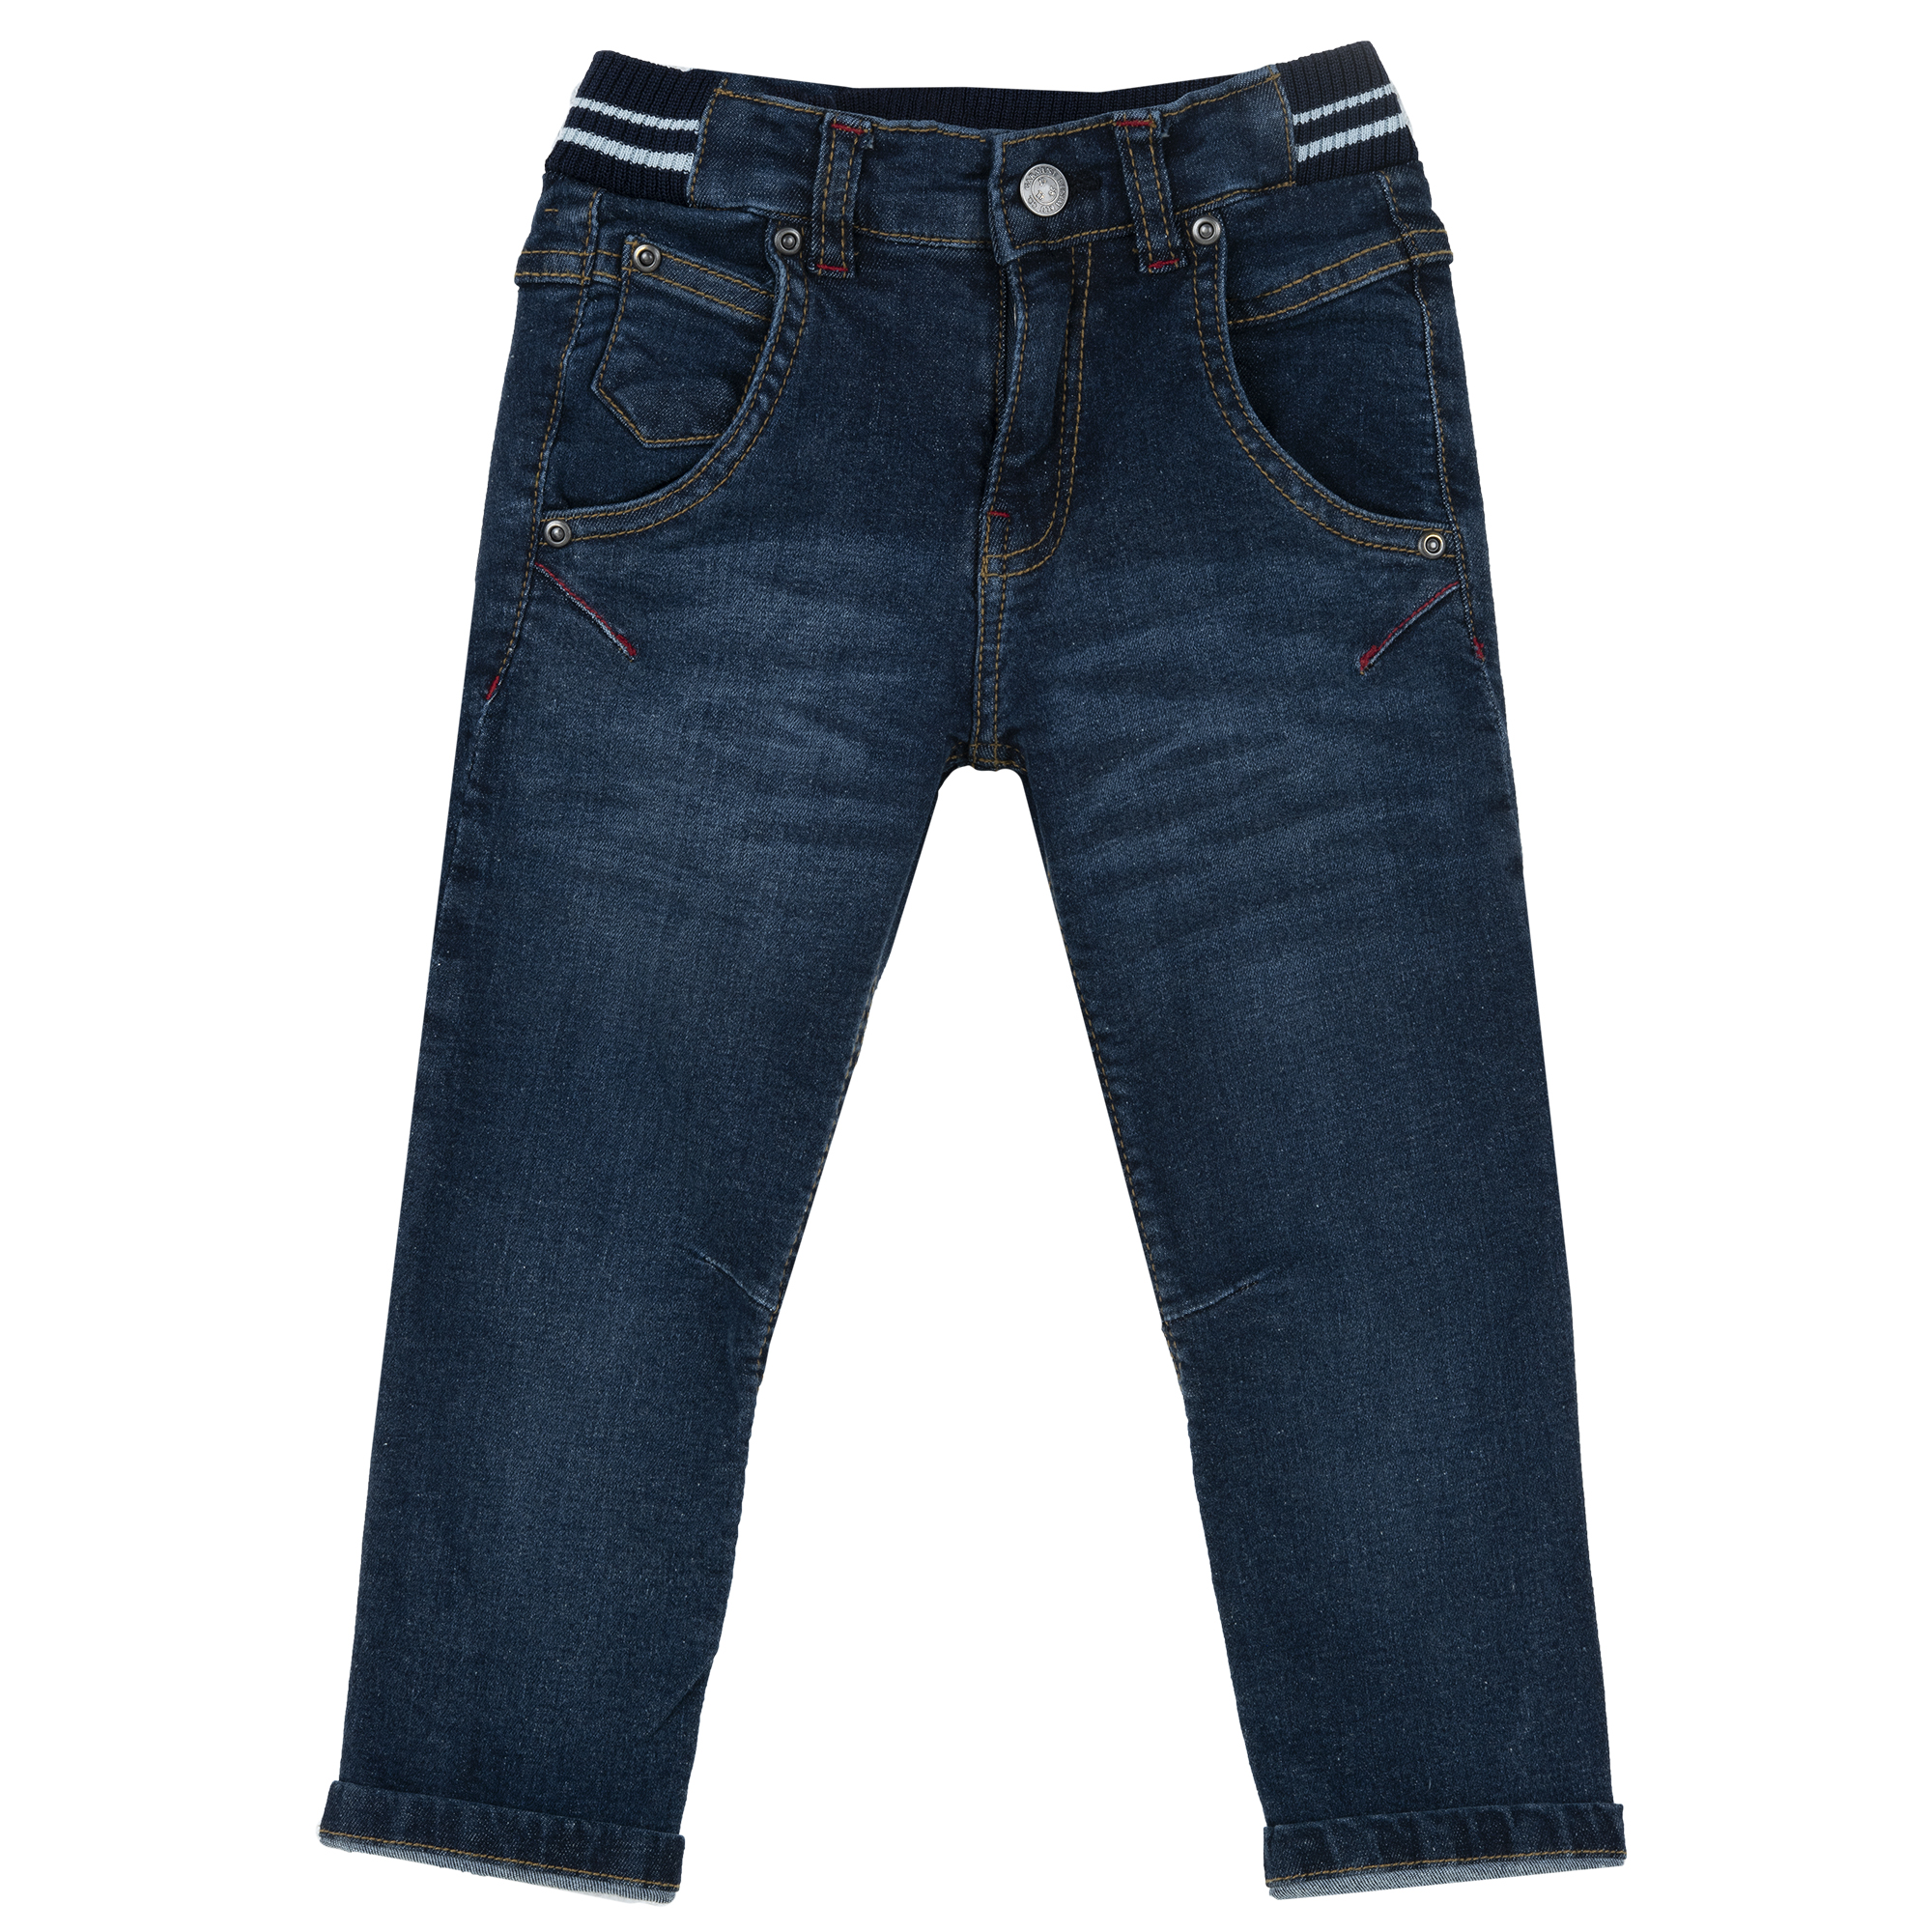 Pantaloni Lungi Copii Chicco, Albastru, 08615